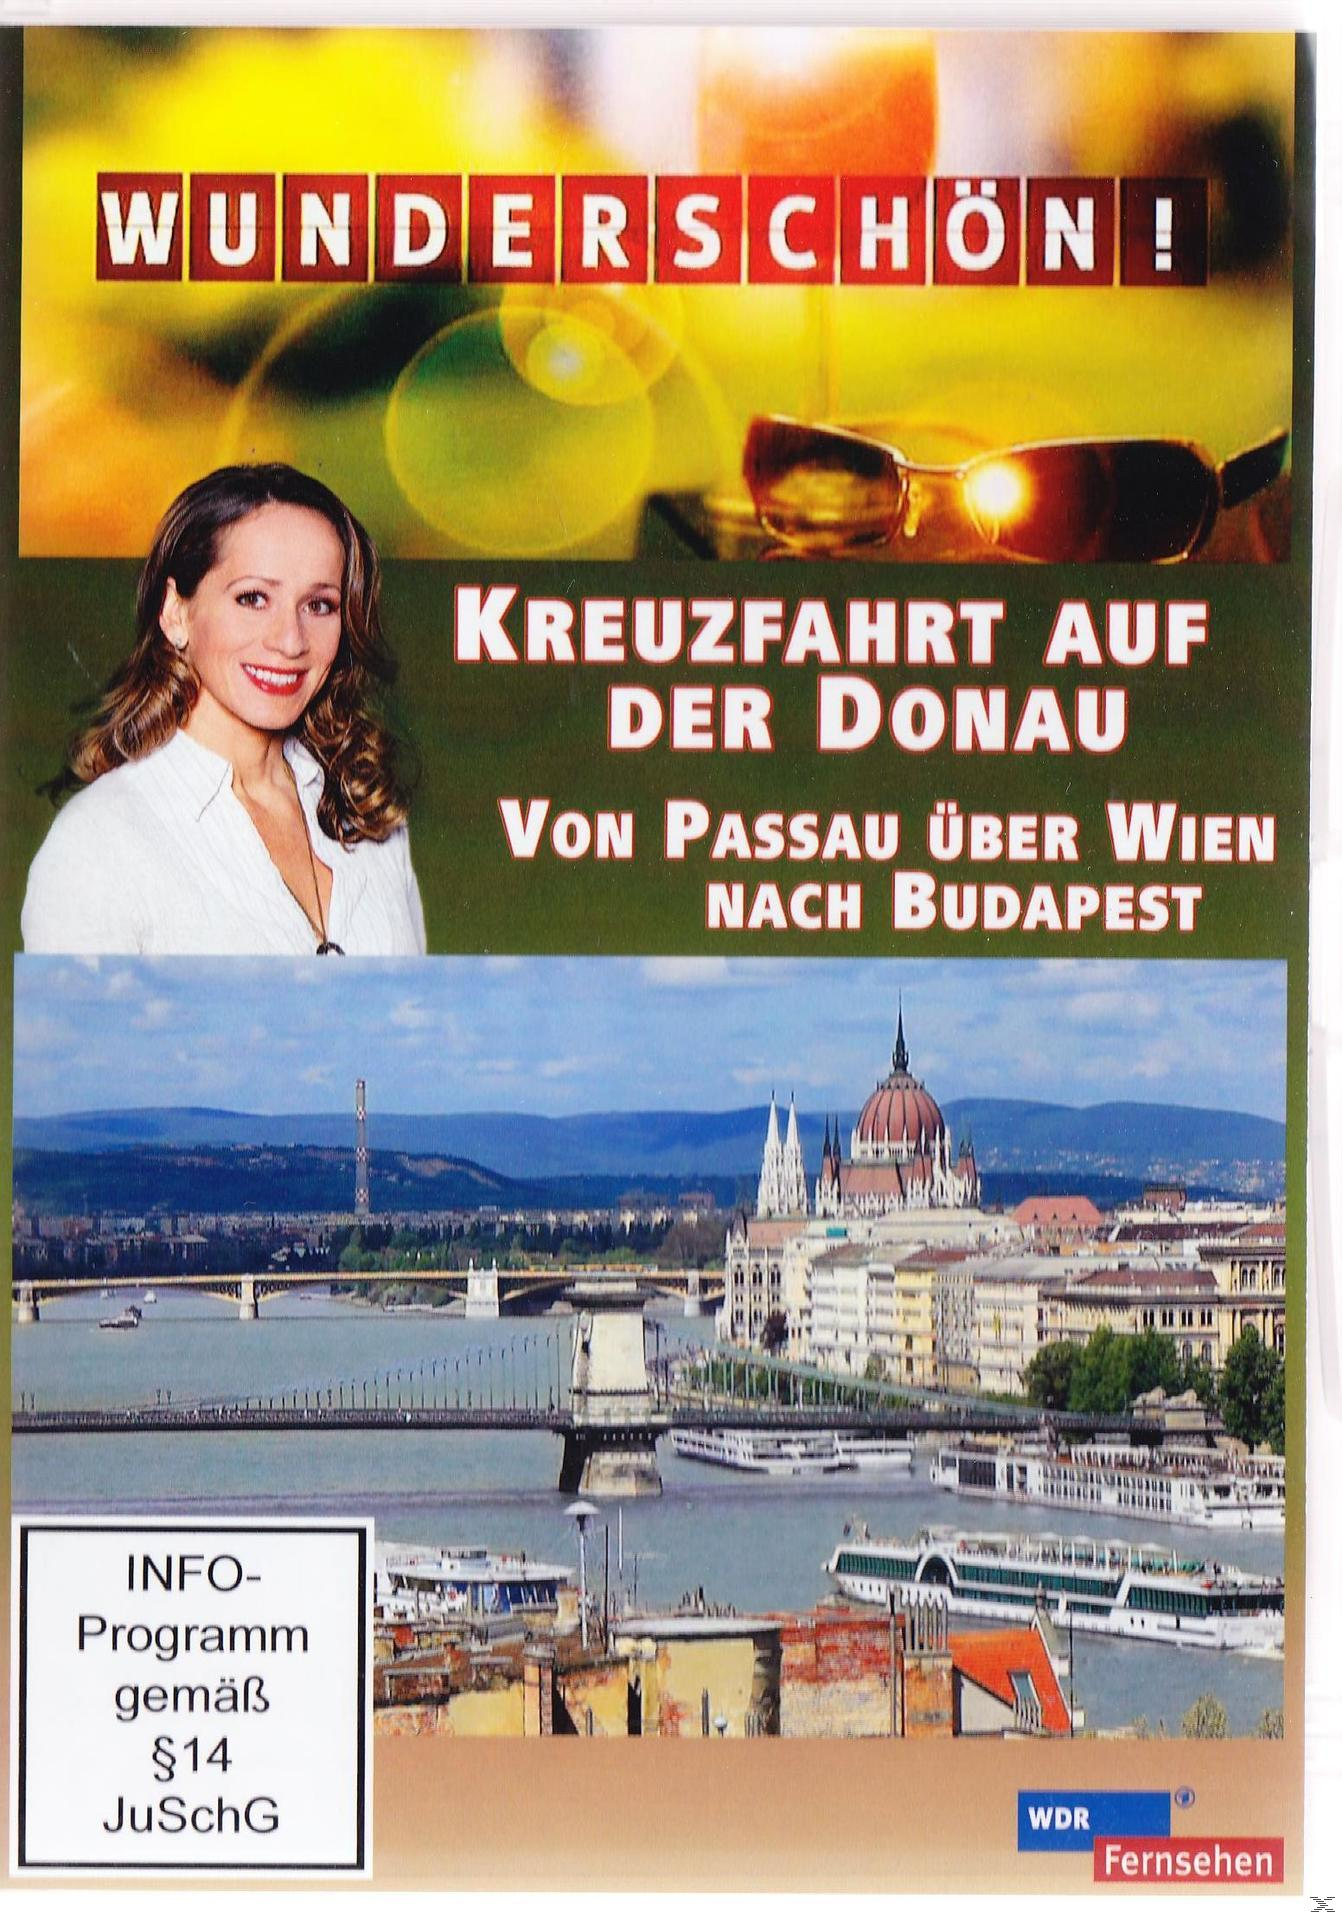 - Wien Wunderschön! der auf Donau: Kreuzfahrt Passau nach Budapest über Von DVD